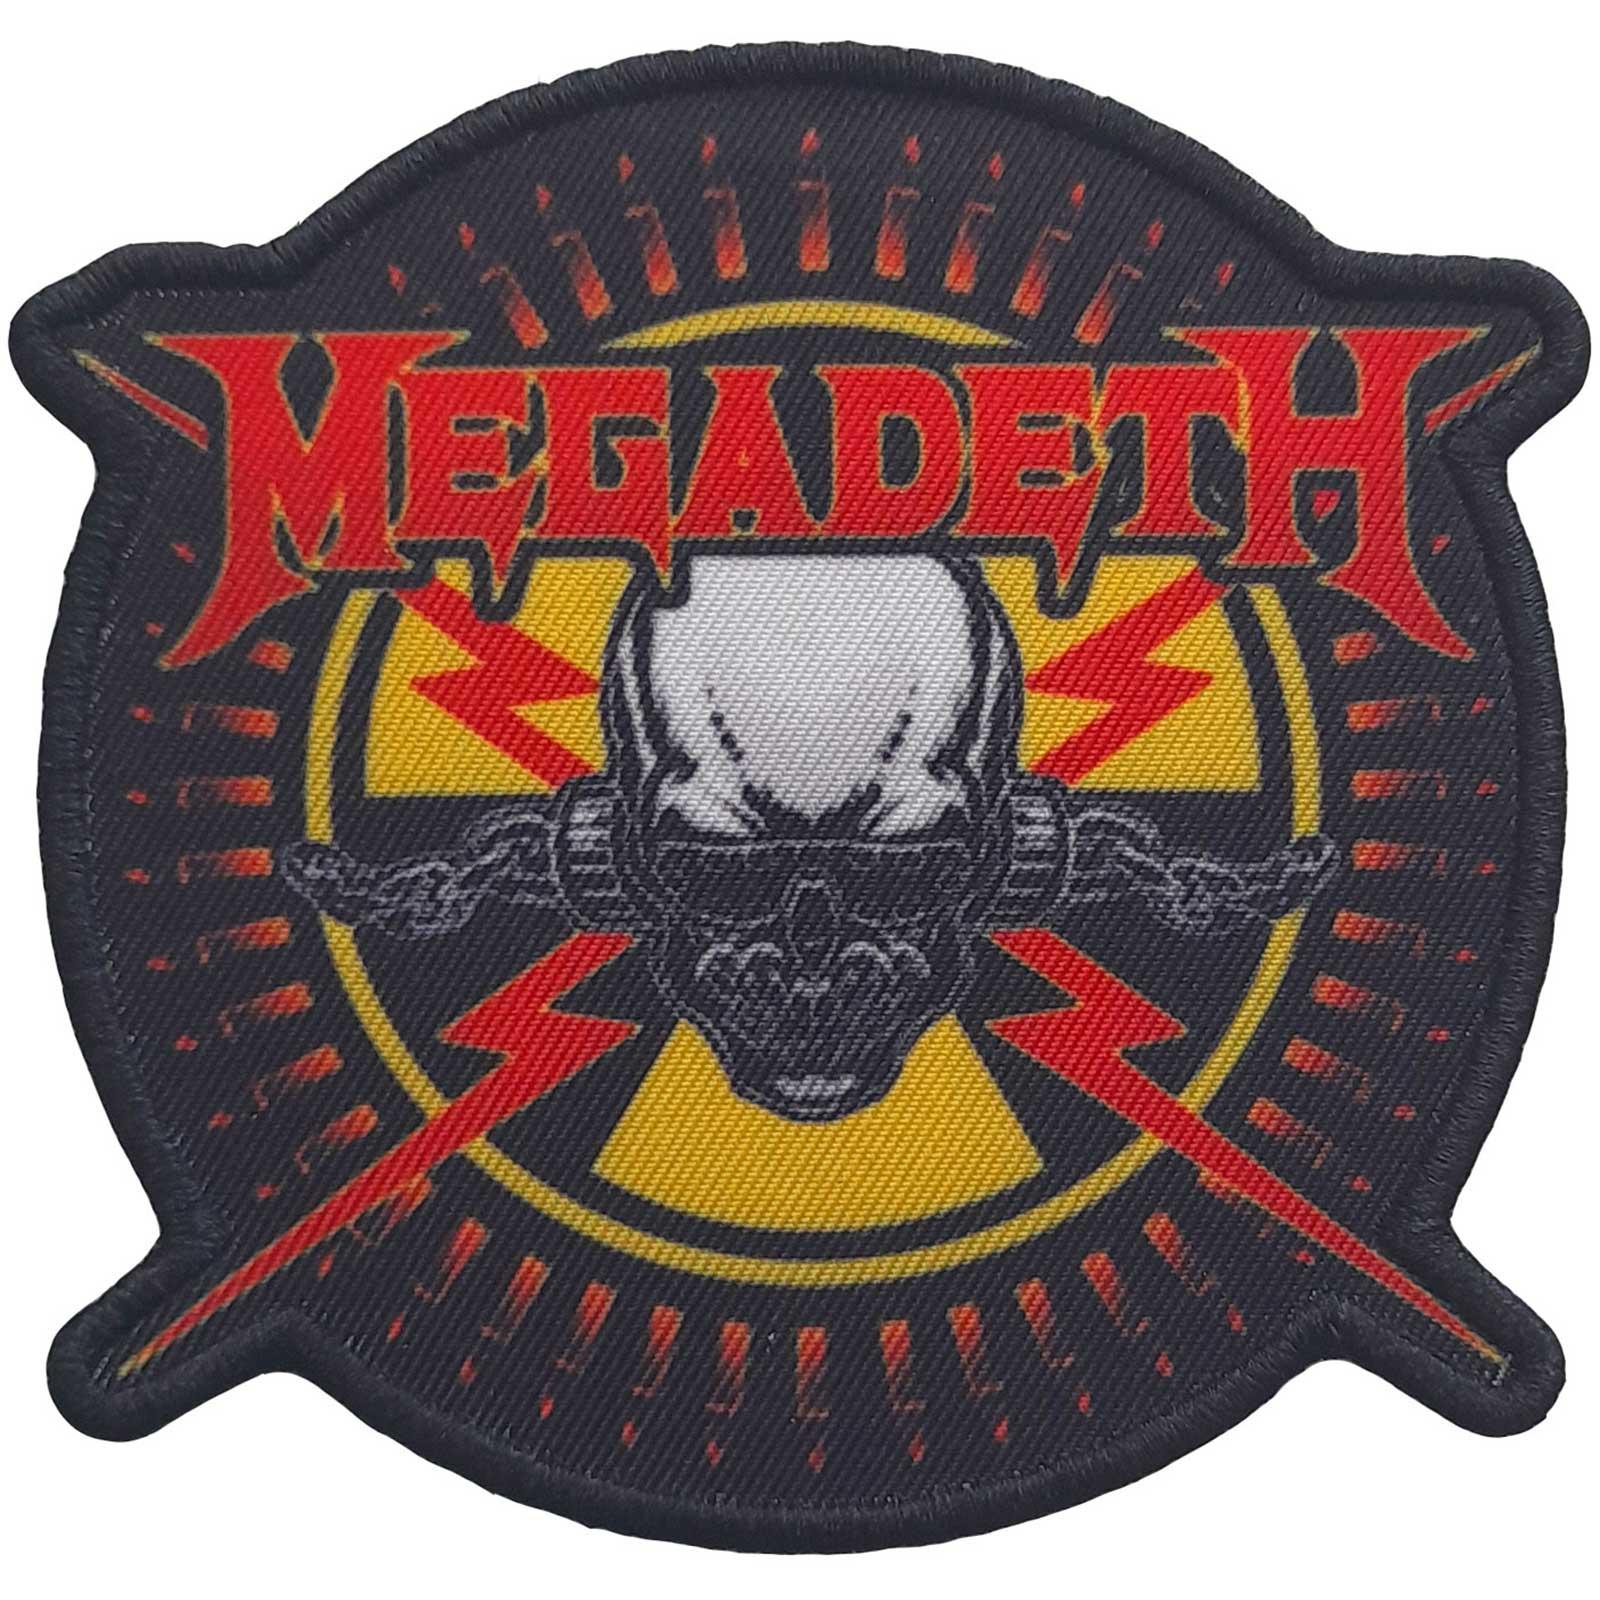 (メガデス) Megadeth オフィシャル商品 Bullet ワッペン アイロン装着 パッチ 【海外通販】